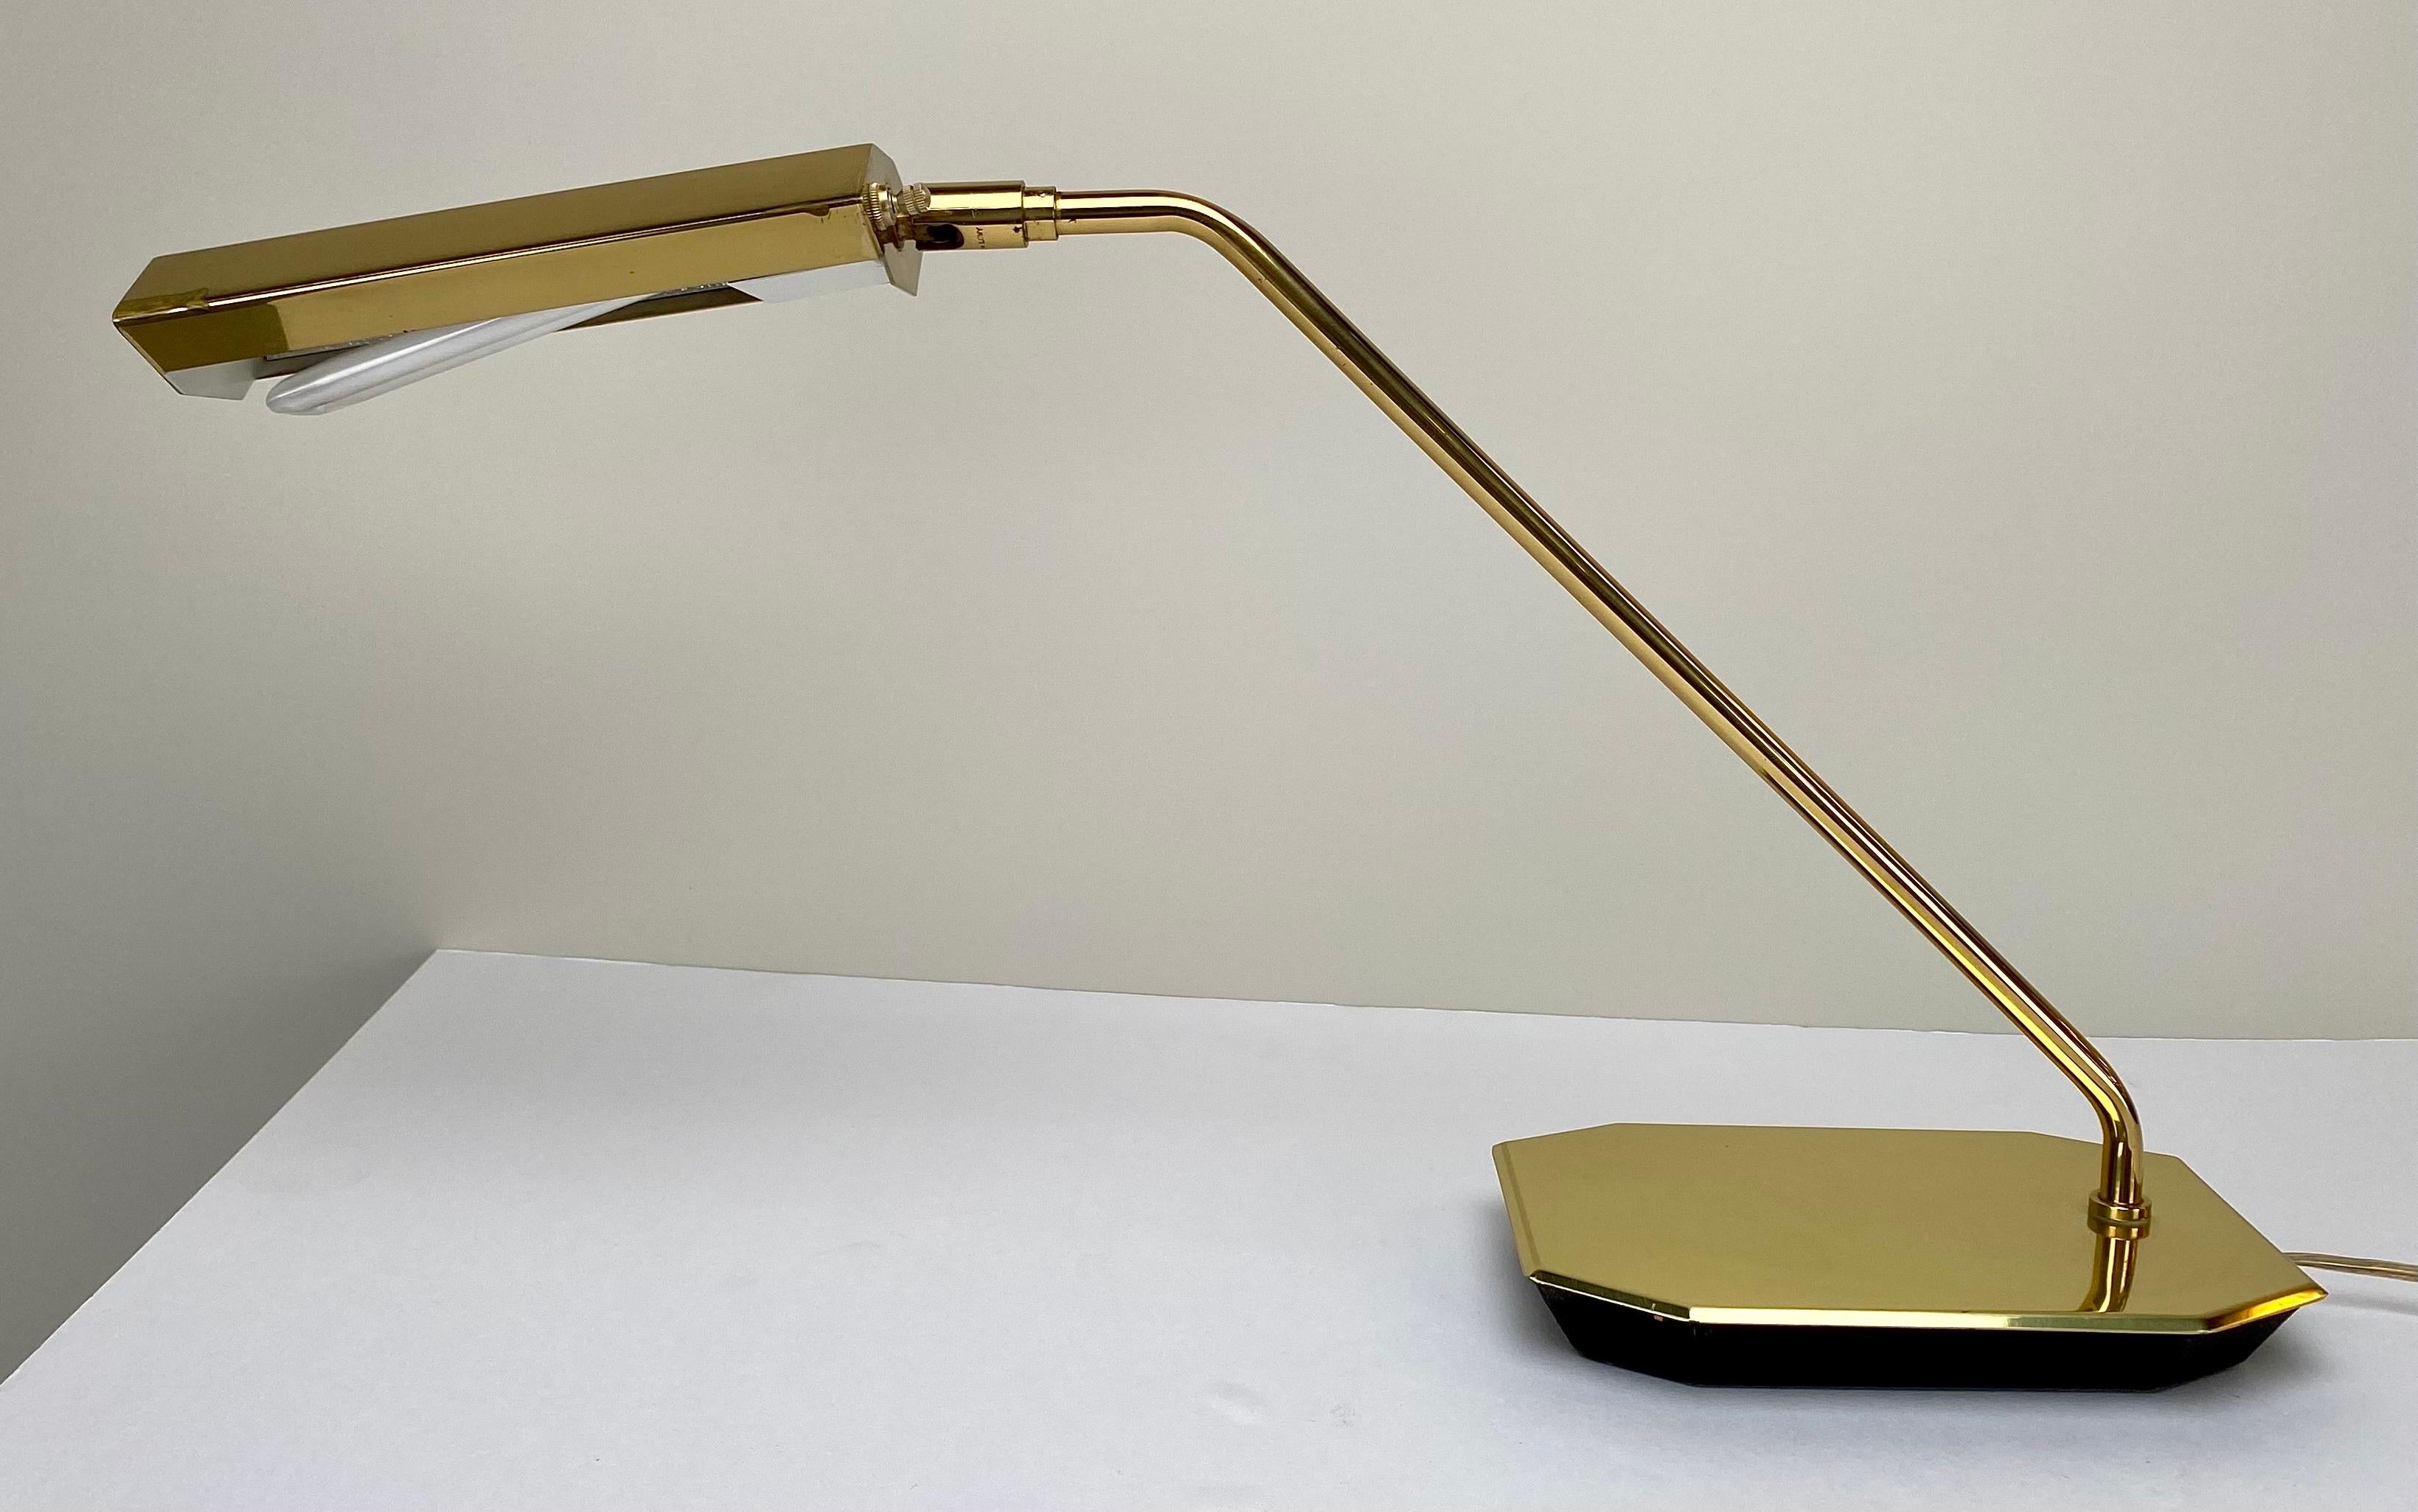  Ein Paar seltener Schätze der Jahrhundertmitte  Koch & Lowy verstellbare Apotheke Messing Schreibtischlampen. Jede Leuchte trägt das prestigeträchtige Markenzeichen von Koch und Lowy, ein Symbol für handwerkliche Qualität und herausragendes Design.